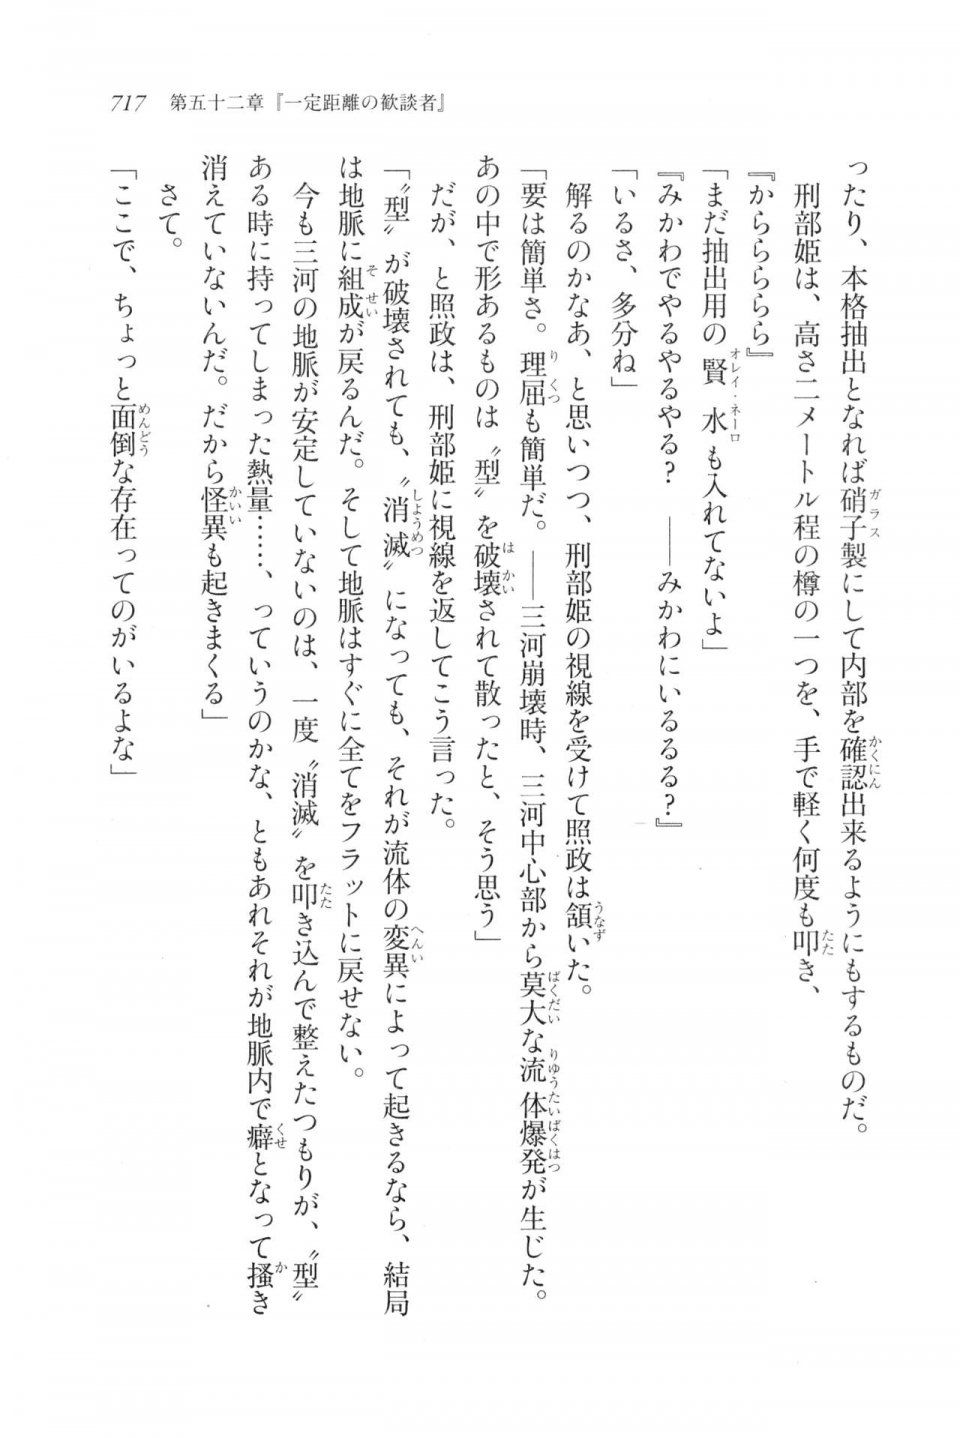 Kyoukai Senjou no Horizon LN Vol 20(8B) - Photo #717